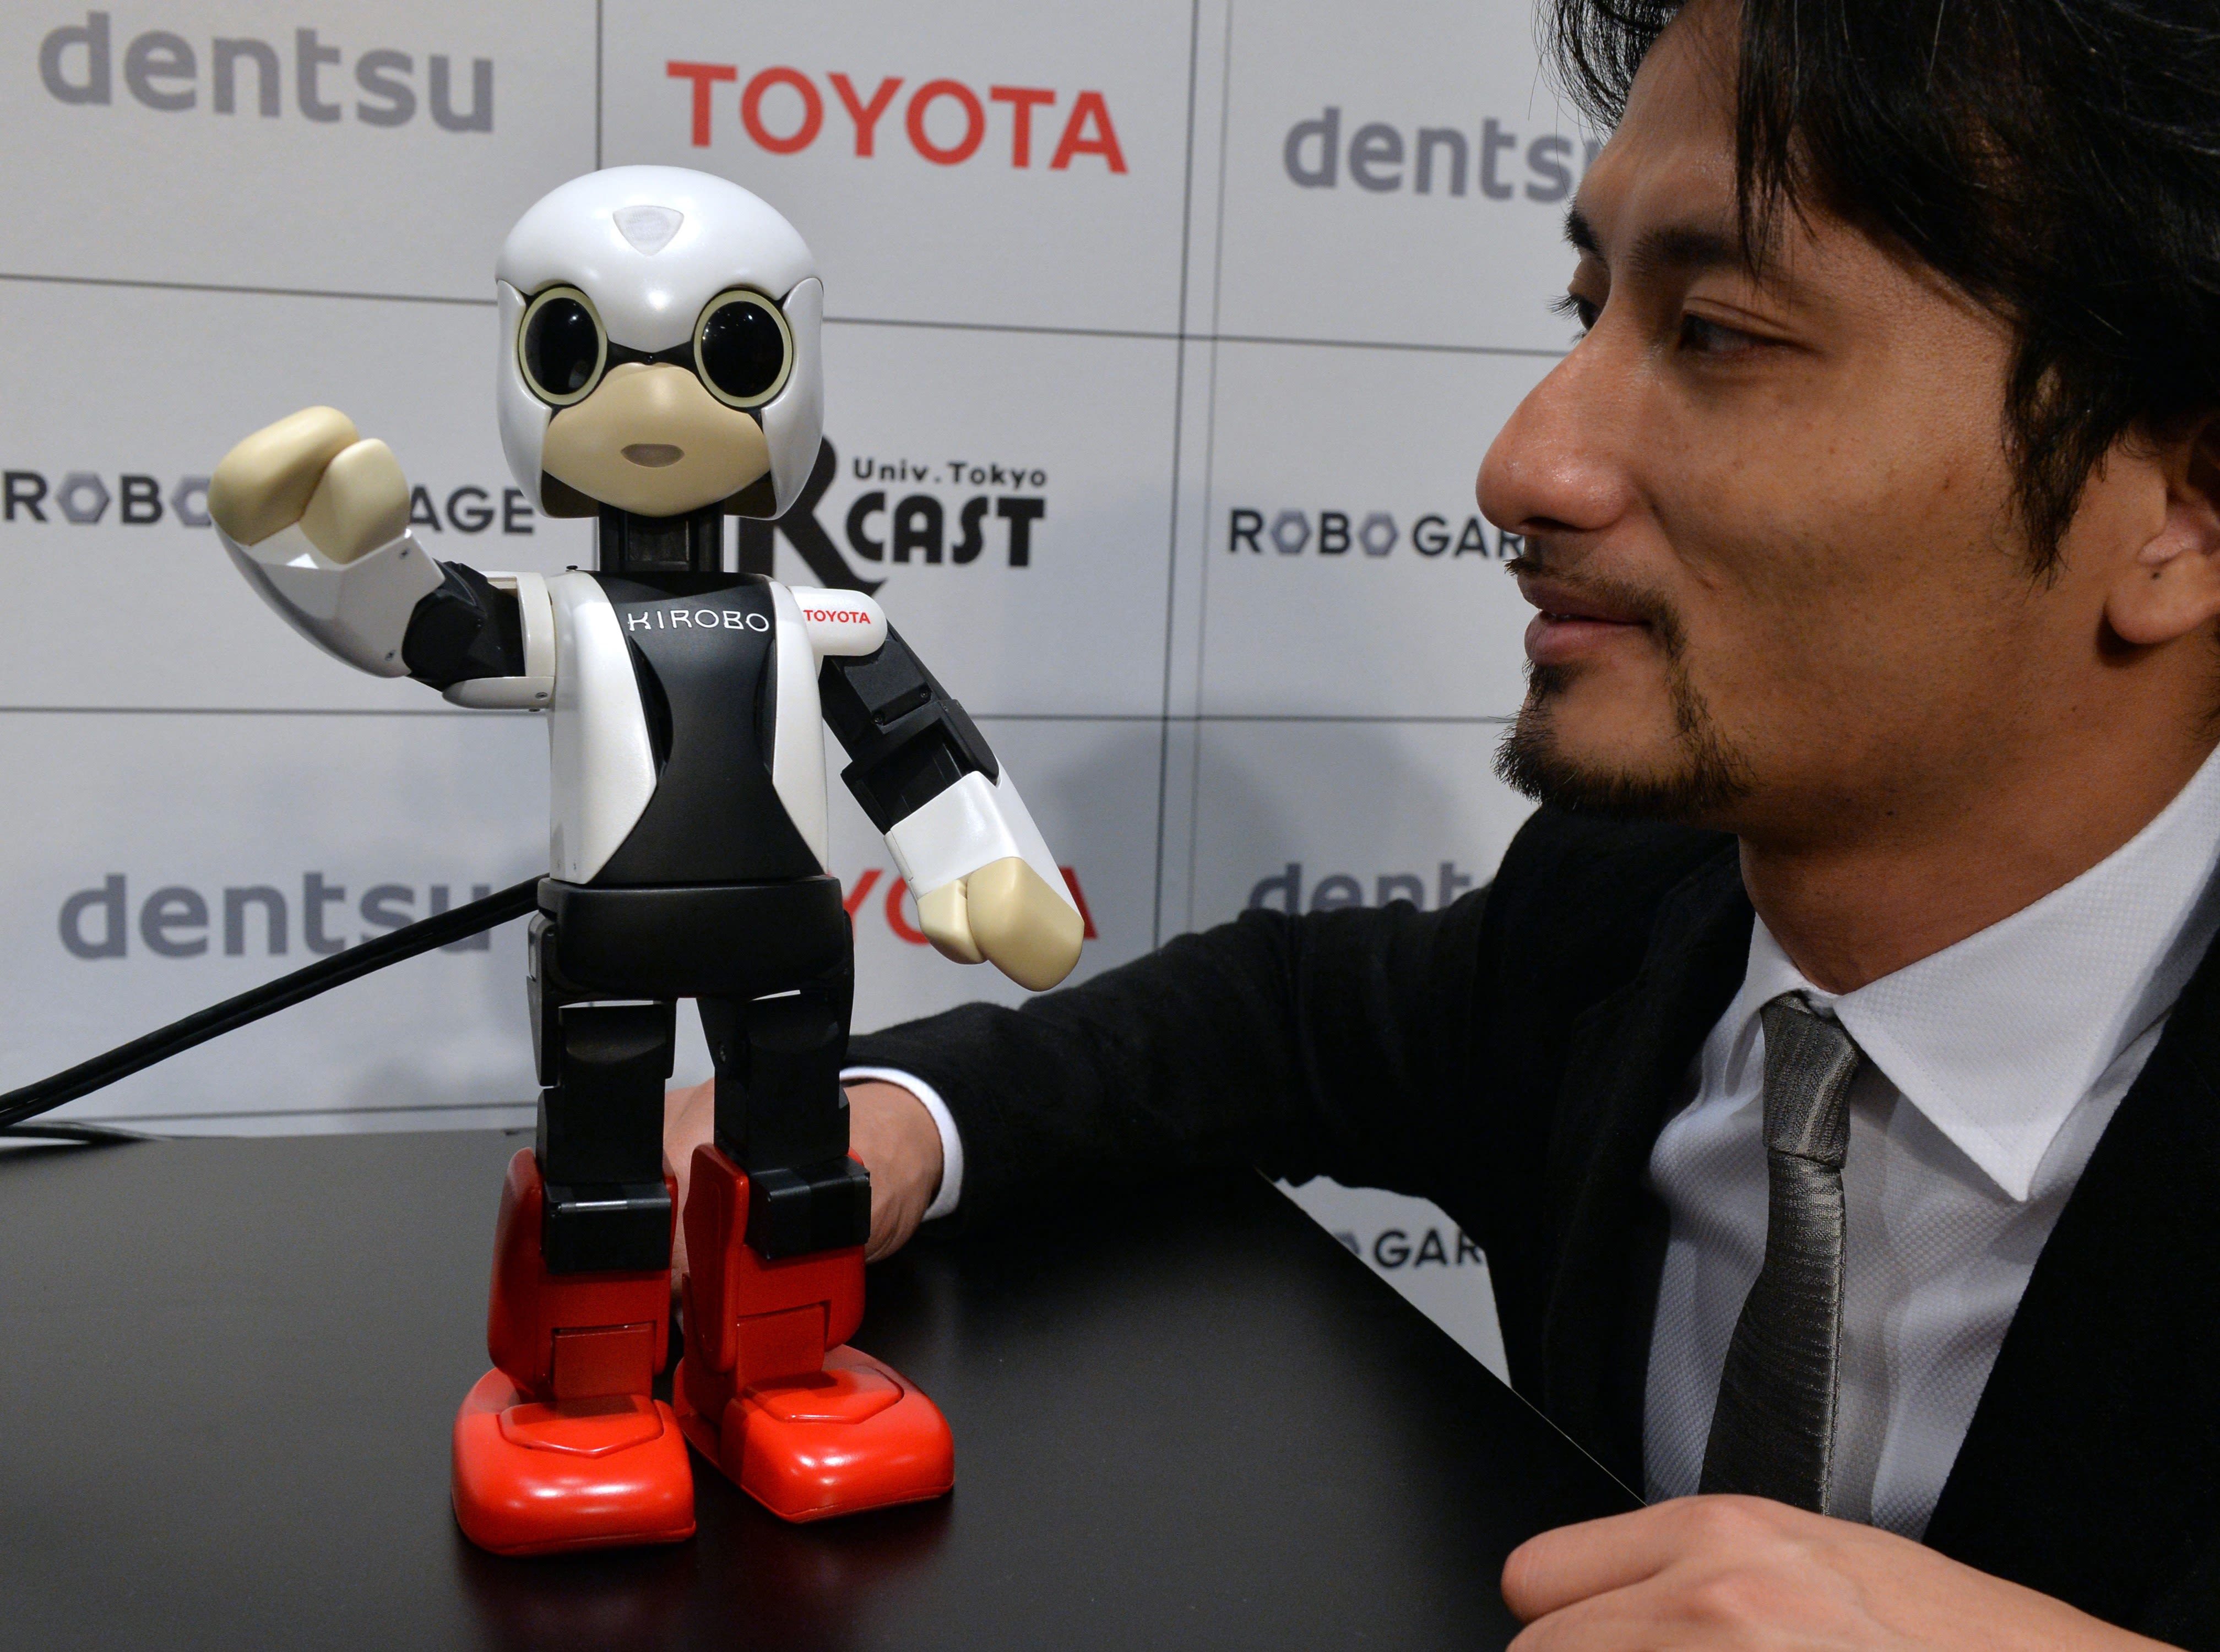 Japan sends robot to | CNN